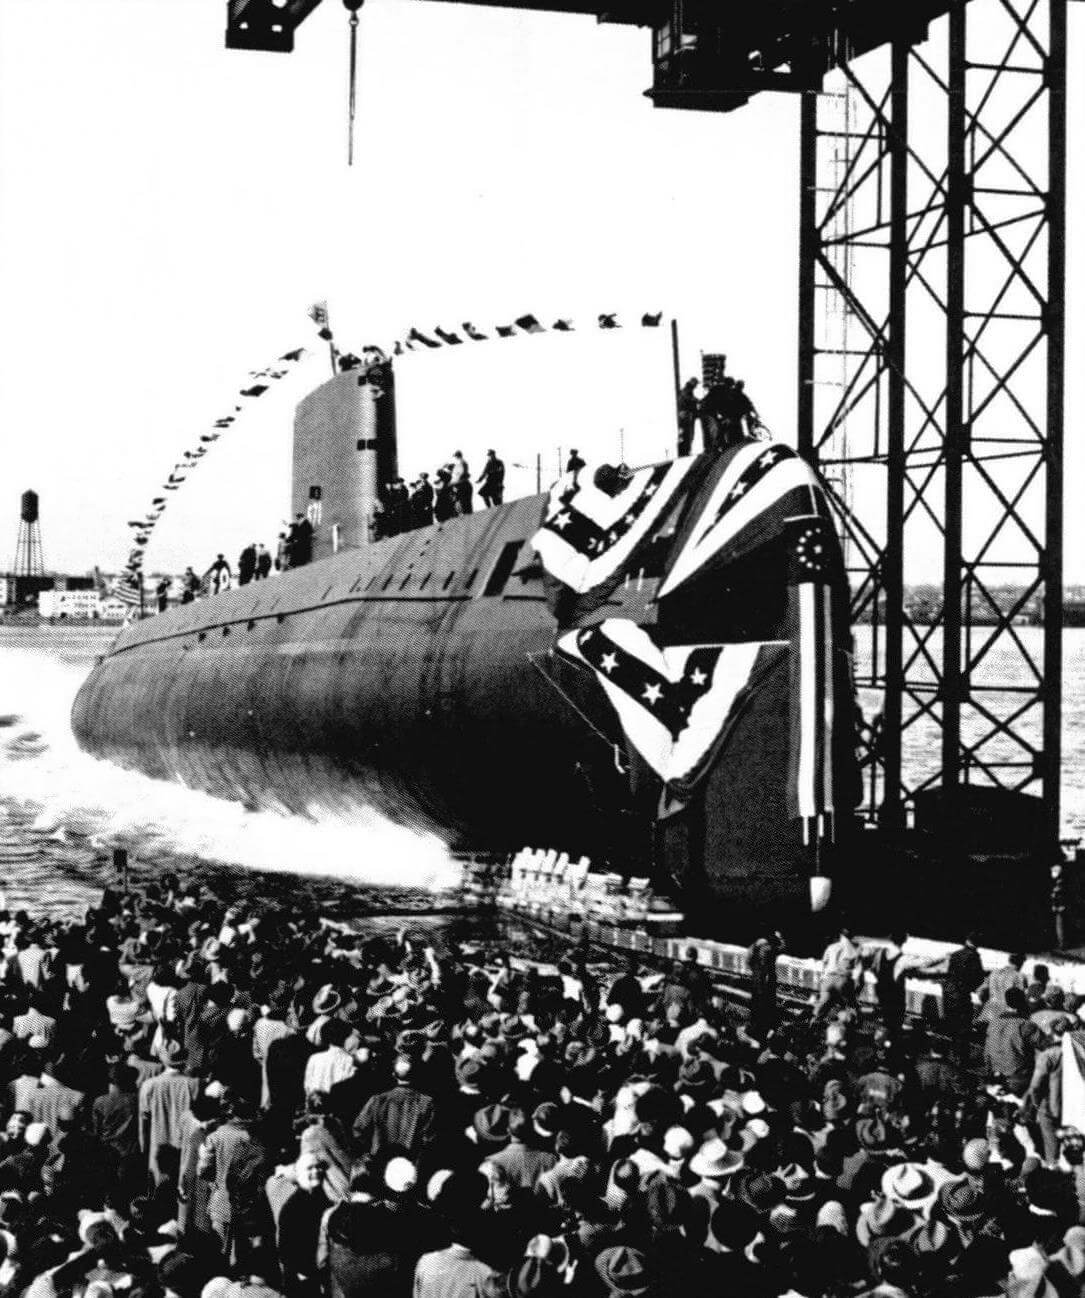 Спуск на воду первого в мире атомохода, подводной лодки «Наутилус» (SSN-571 «Nautilus»), 21 января 1954 года. Субмарина оказалась не слишком удачной боевой единицей, но хорошо послужила американскому флоту в качестве своеобразной «школьной парты». Одним из реально достигнутых успехов «Наутилуса» следует признать успешный поход к Северному полюсу